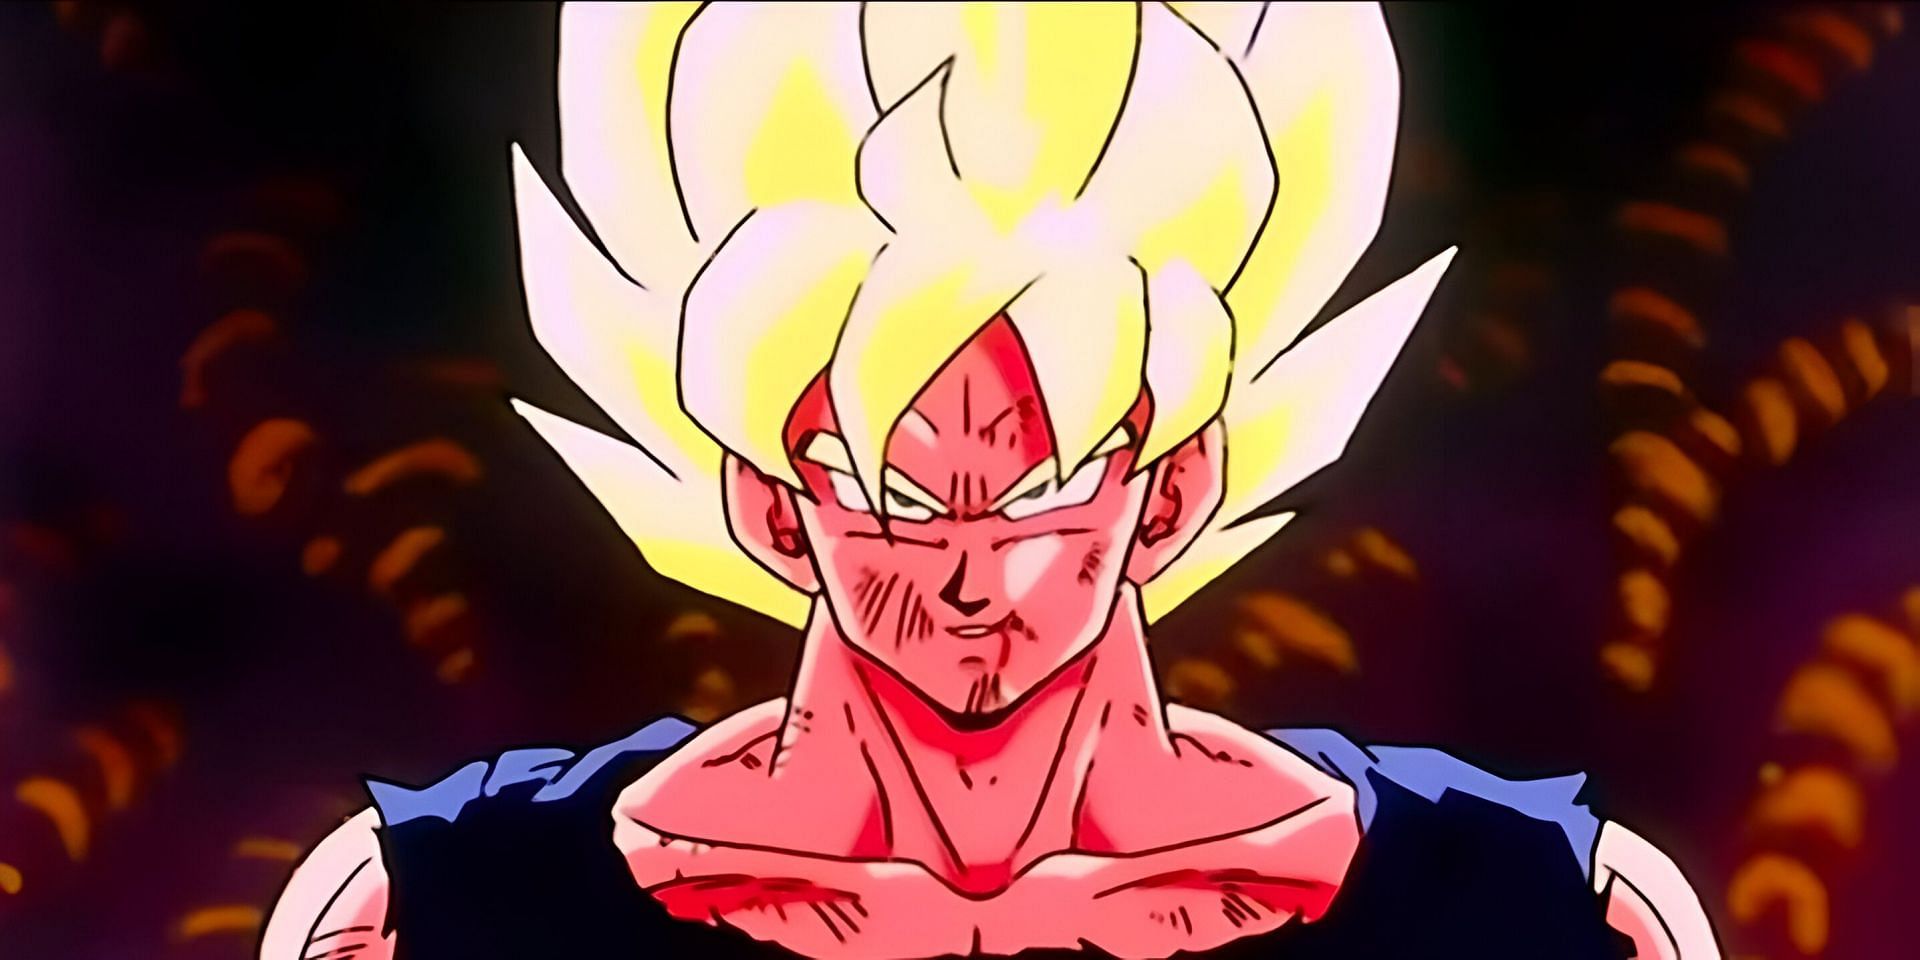 Son Goku as seen in Dragon Ball Z anime (Image via Toei Animation)